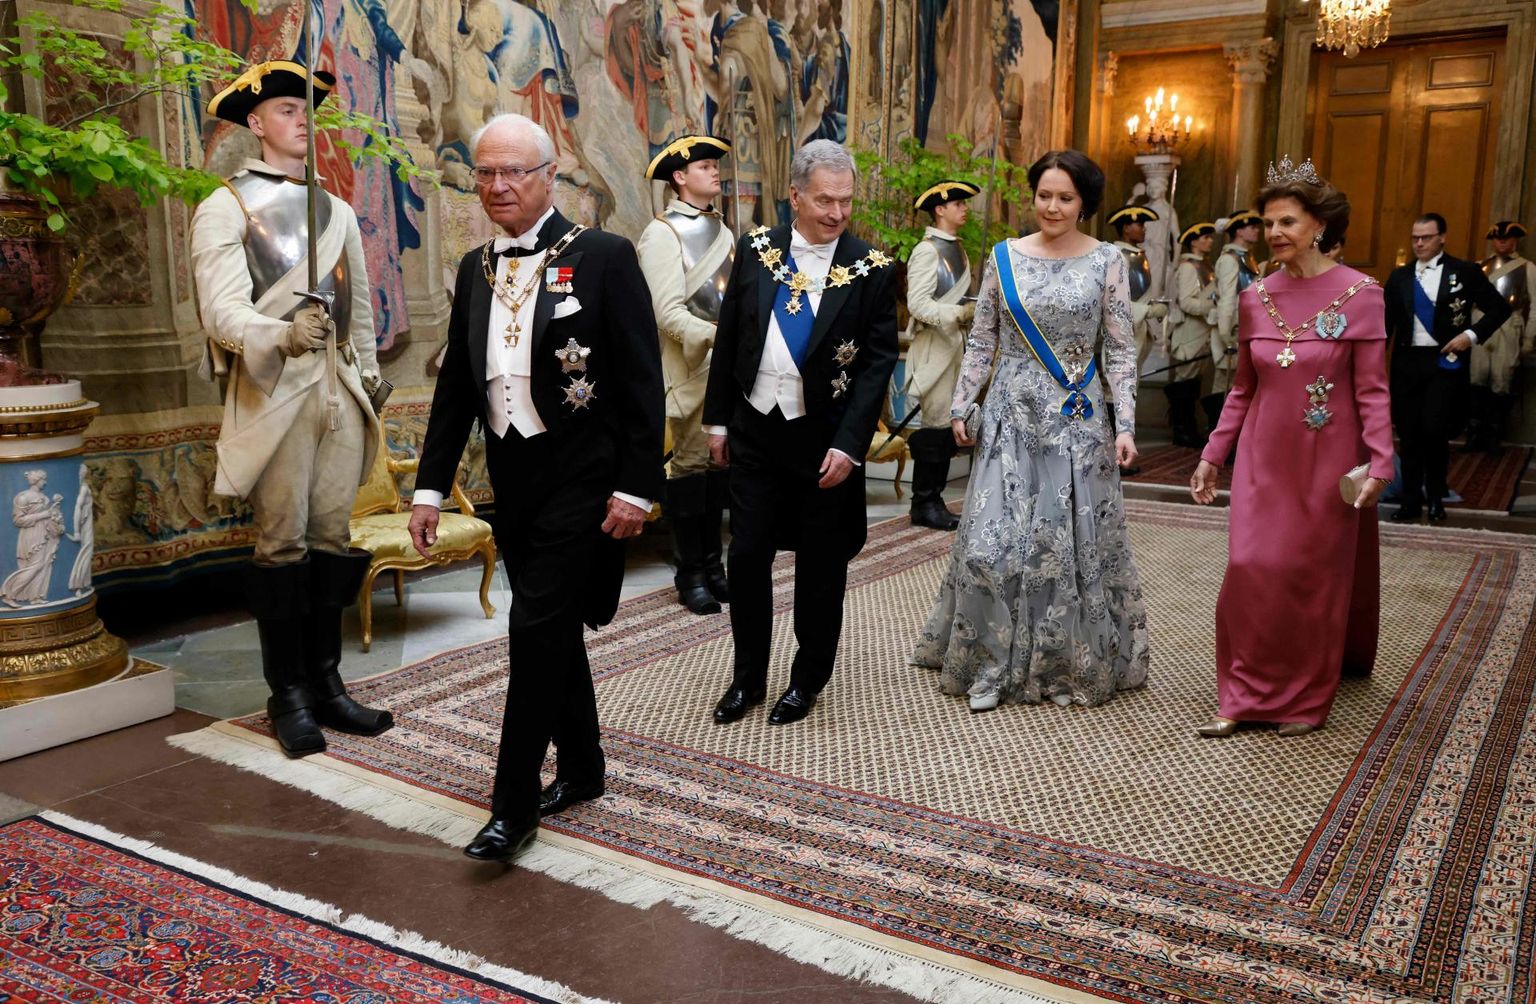 NATOsse astumise puhul külastas Rootsi Soome president Sauli Niinistö. Vasakult Rootsi kuningas Karl XVI Gustaf, Niinistö ja tema naine Jenni Haukio ning Rootsi kuninganna Silvia.